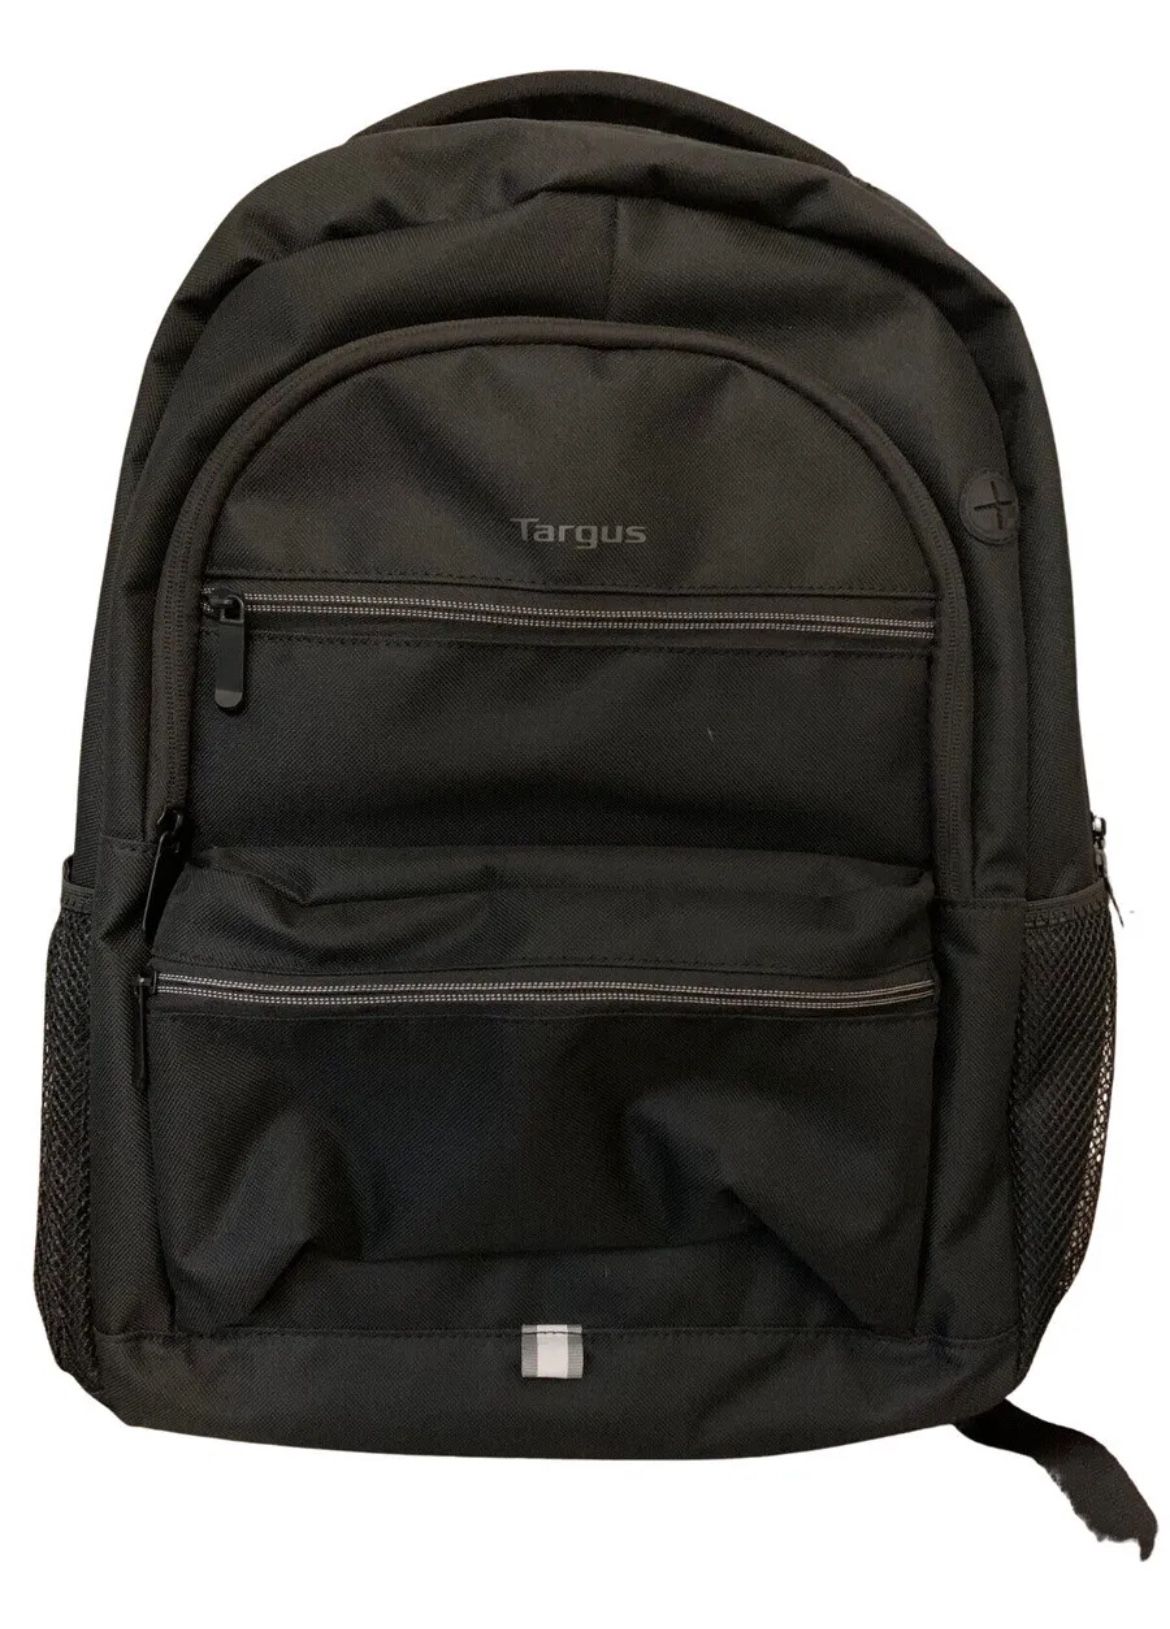 Targus Octave II 15.6 inch Laptop Backpack - Black (TBB637GL)